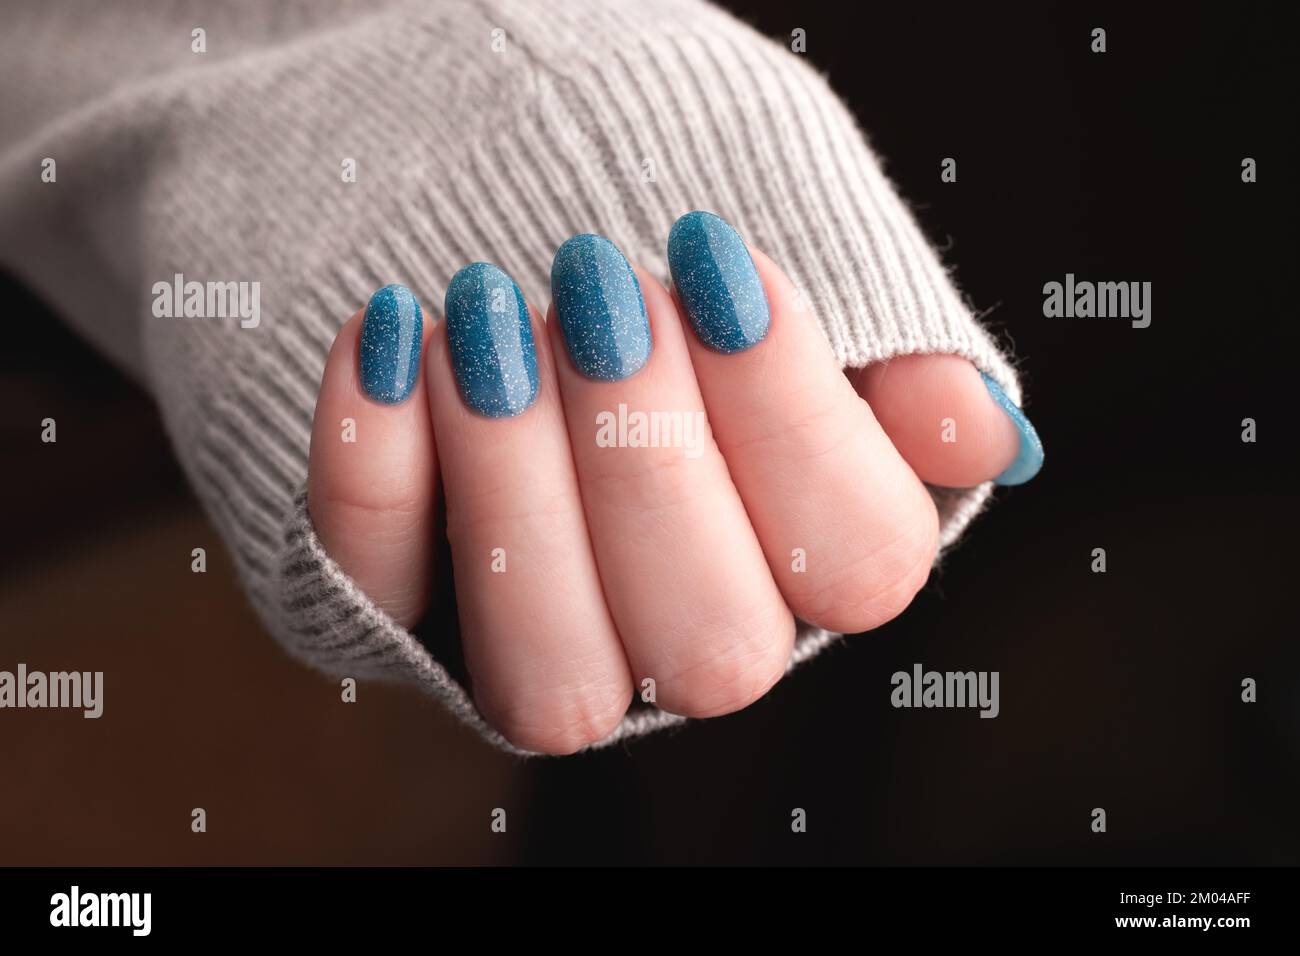 Femme main en tricot gris avec belle manucure - ongles à paillettes bleues. Concept de soin des ongles Banque D'Images